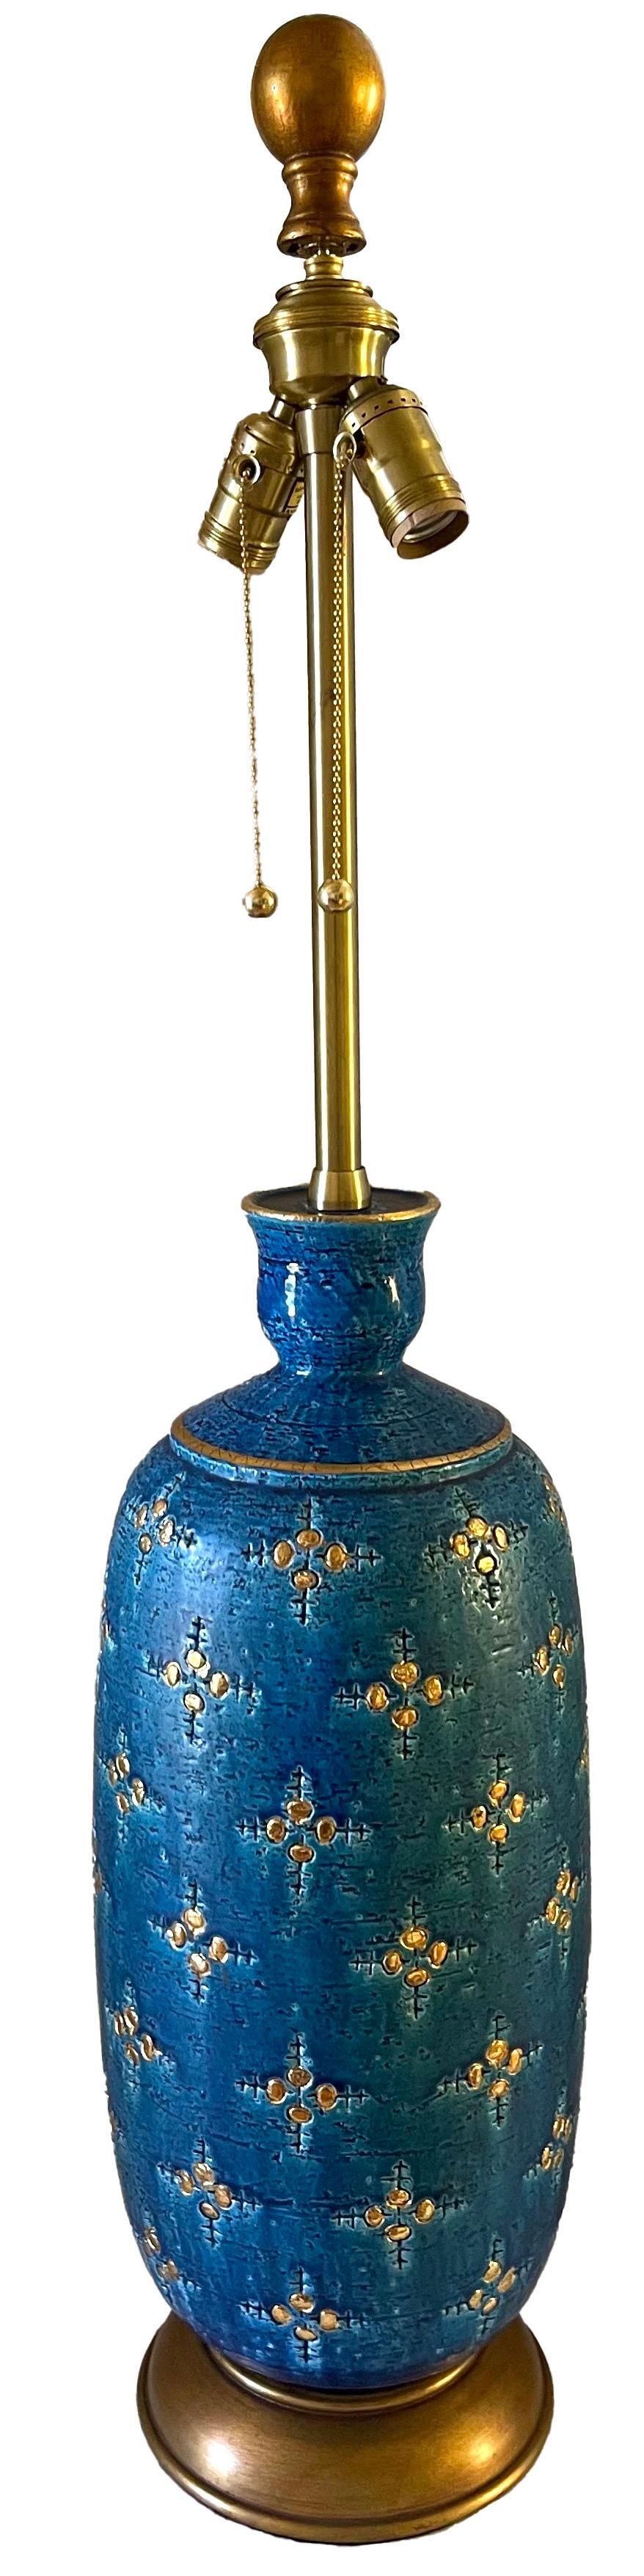 Très grande lampe italienne en céramique bleue et or Bitossi Rimini par Marbro. Corps de lampe en céramique turquoise éblouissante avec des accents dorés peints à la main. Socle original en bois peint en or.
Câblage refait à neuf avec prises en